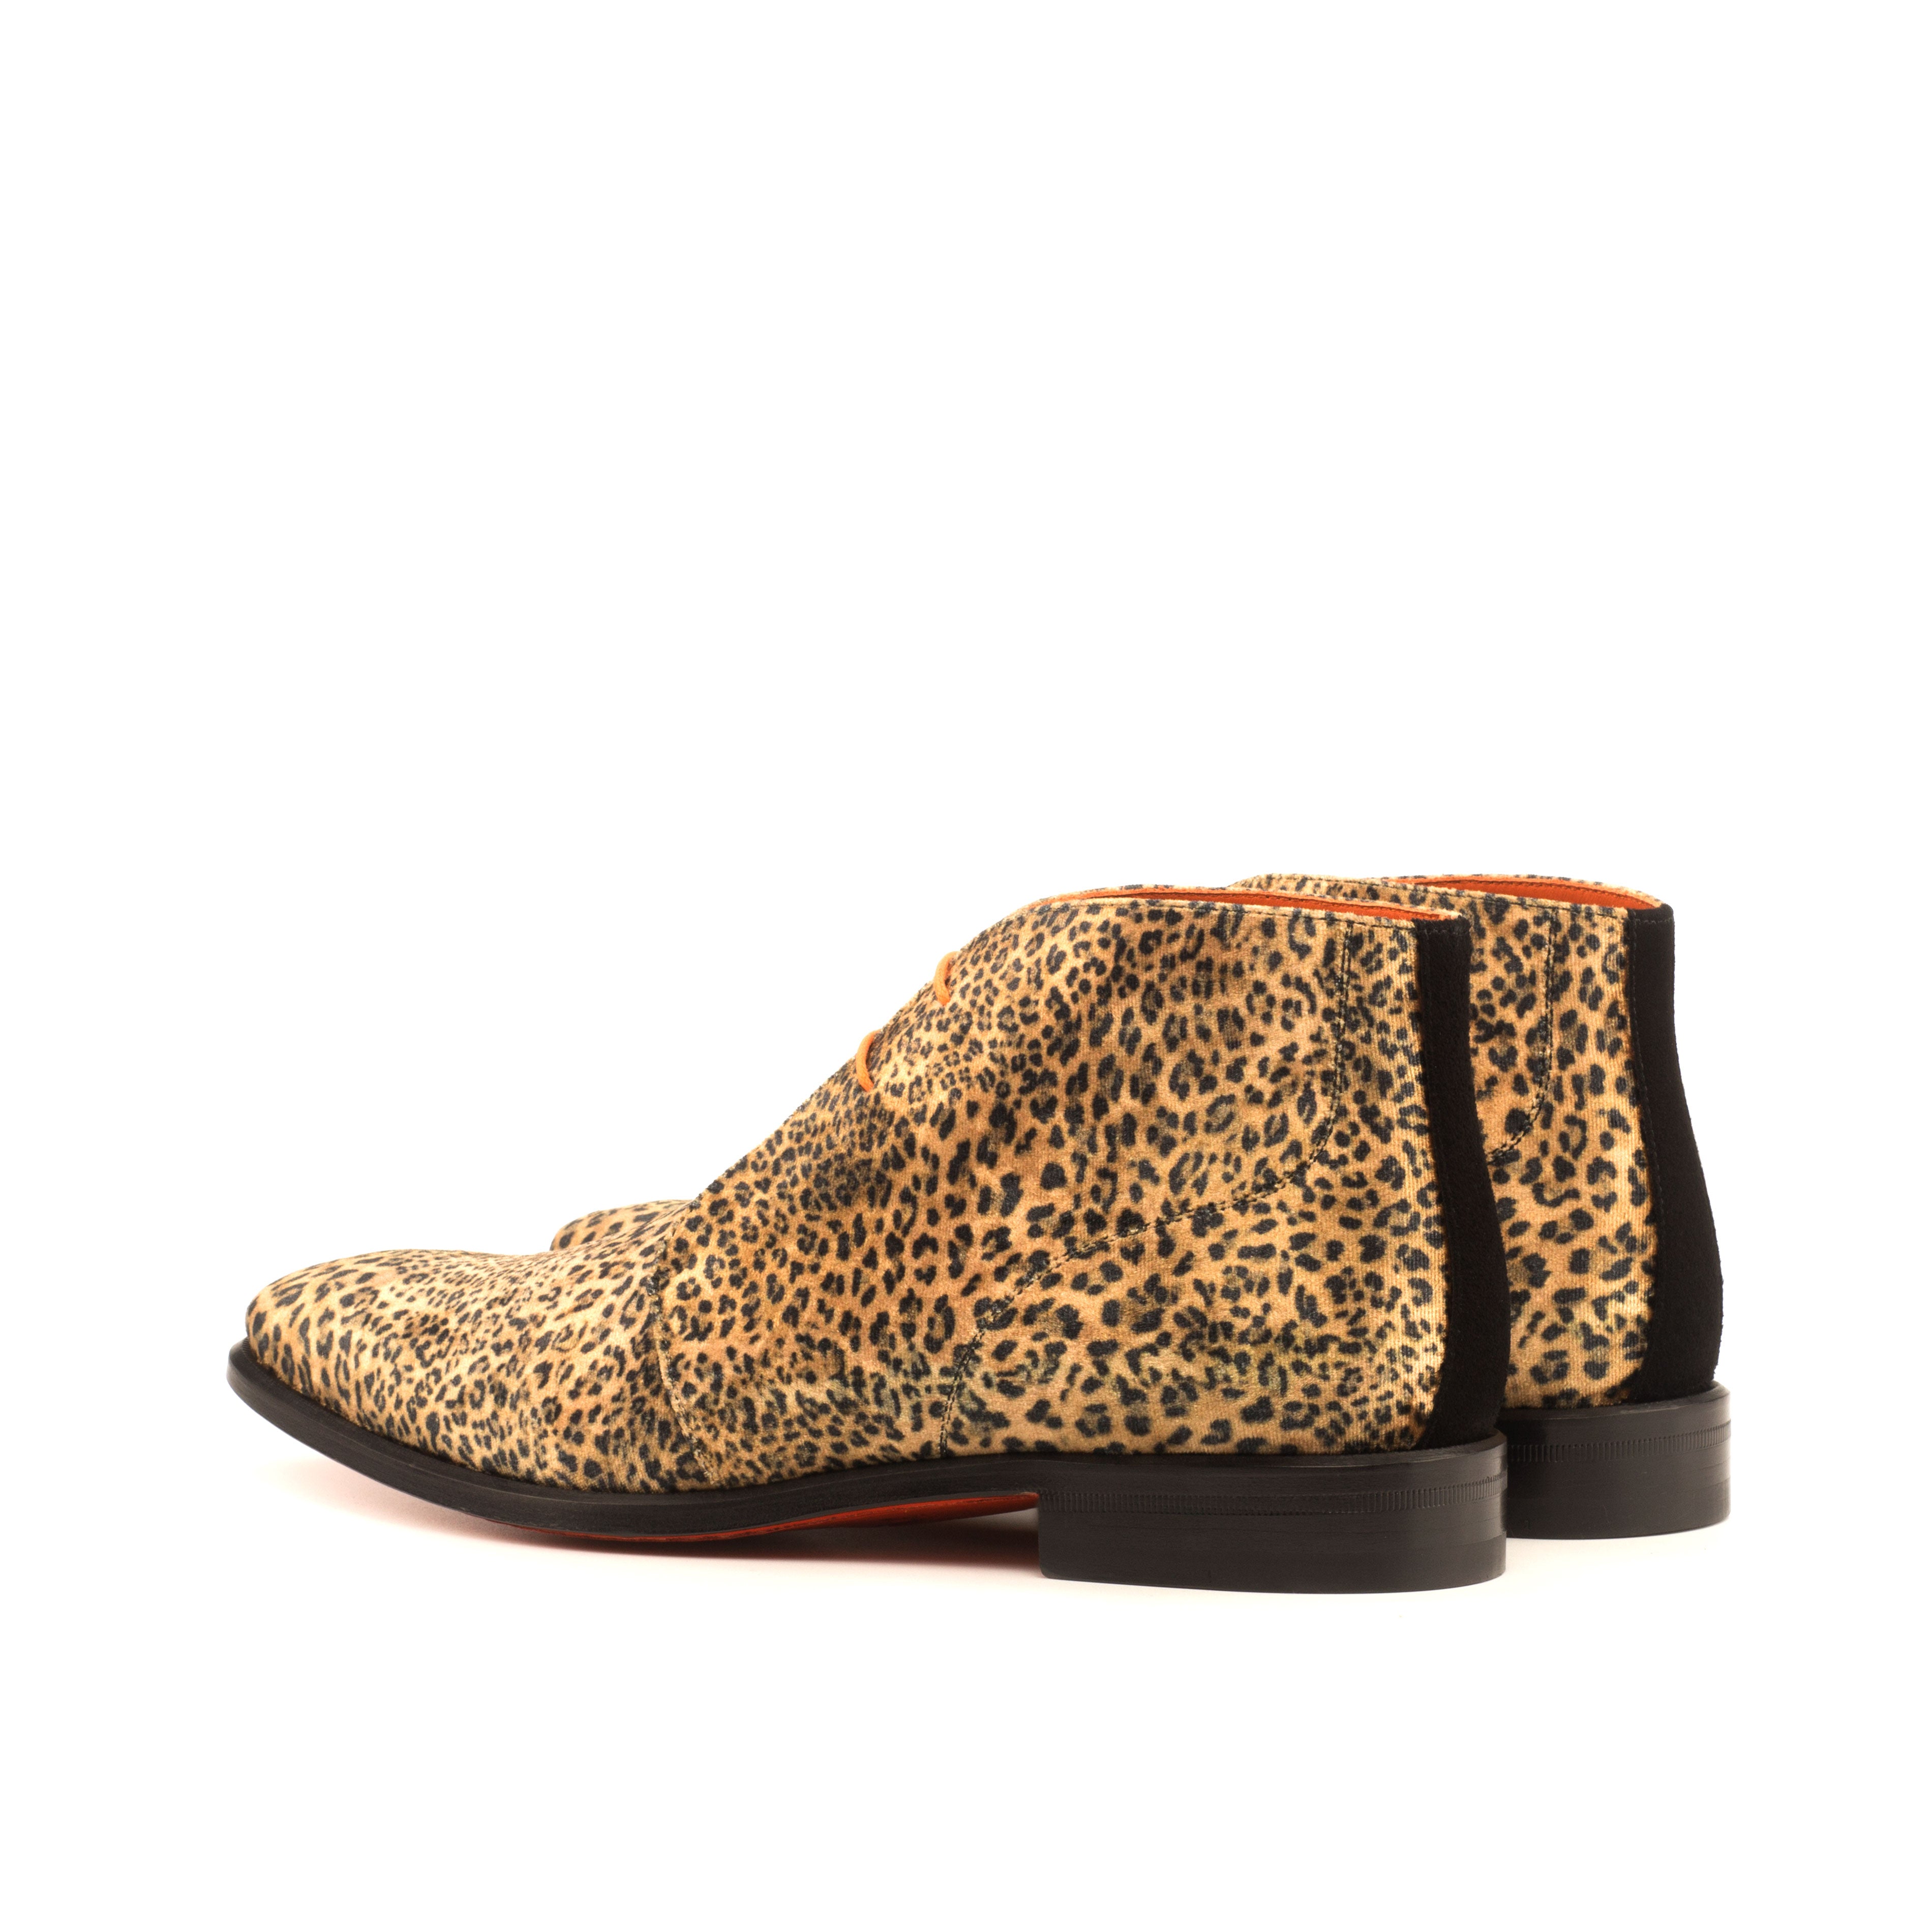 Leopard Chukka Boot